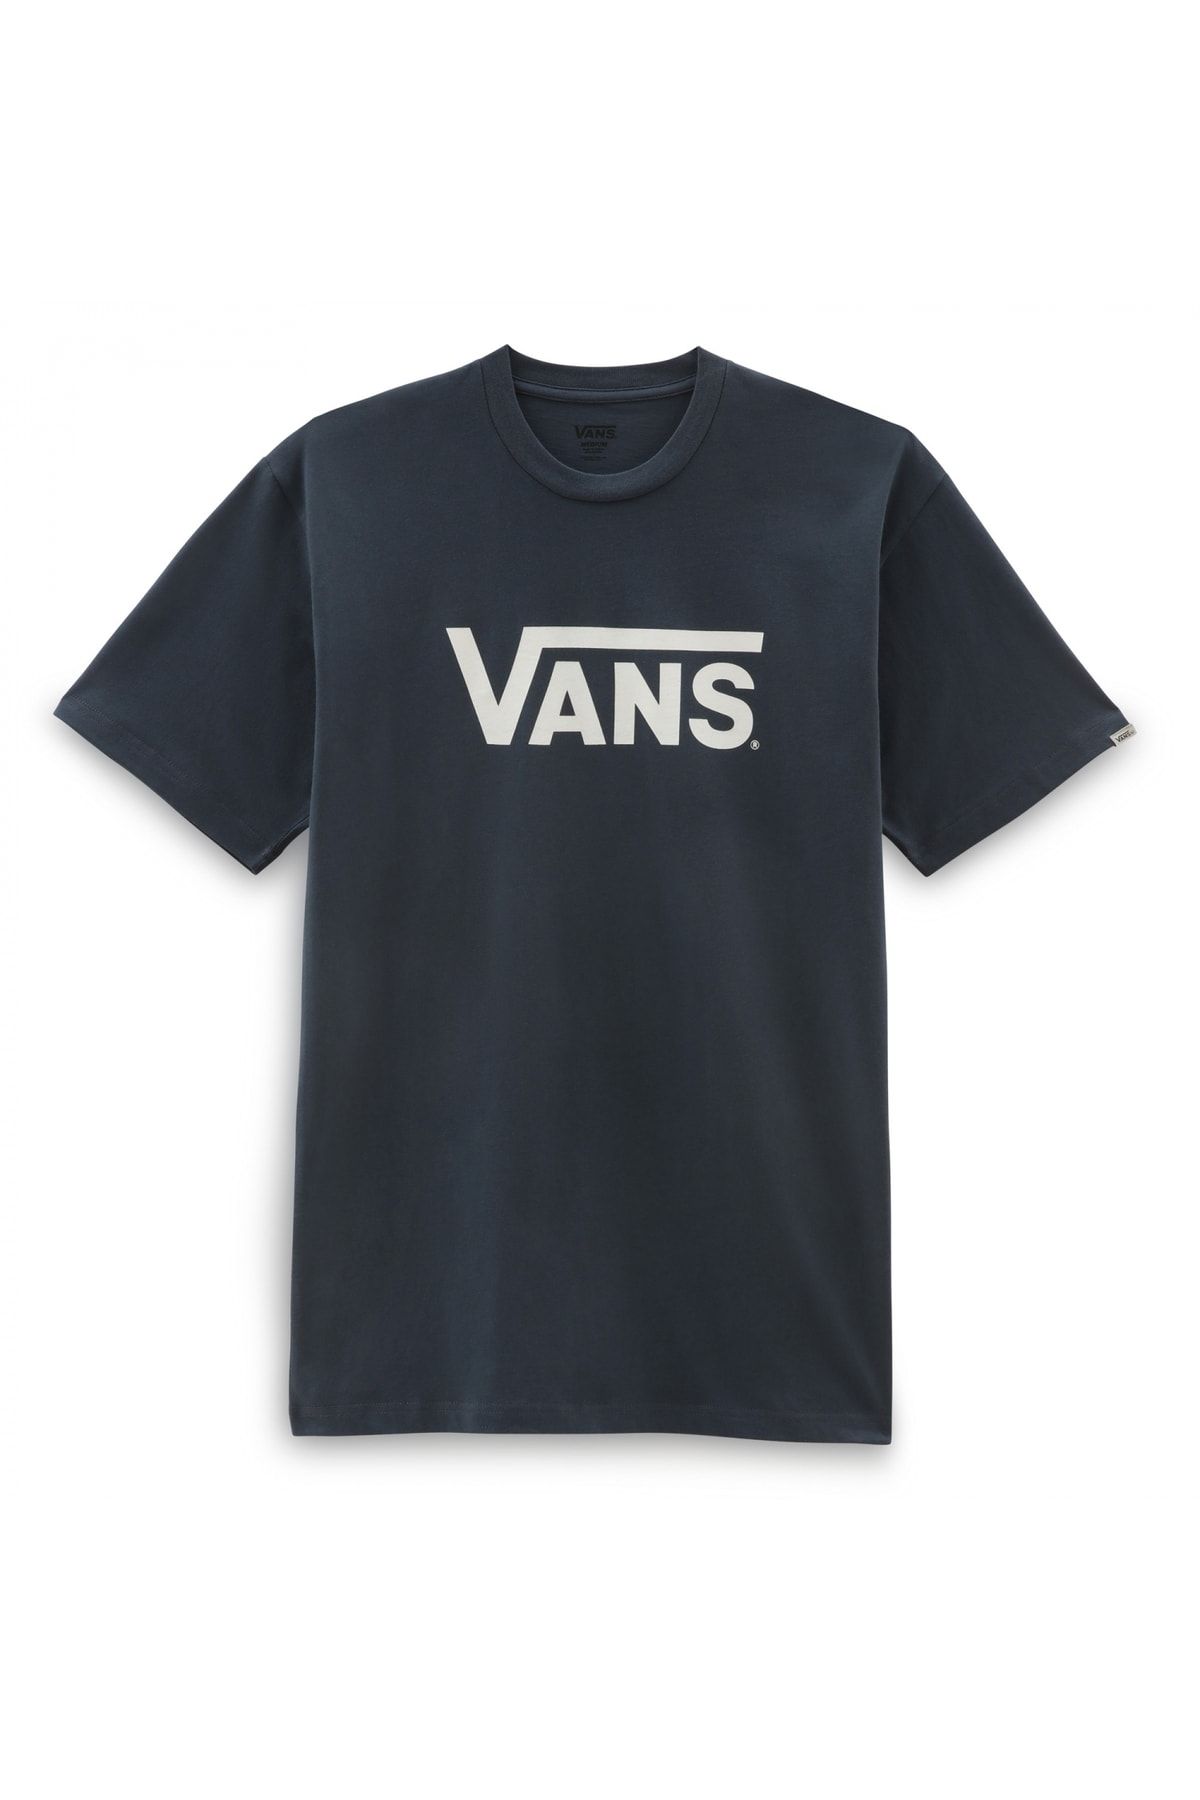 تی شرت آبی سرمه ای یقه خدمه طرح چاپی مدل ساده آستین کوتاه زنانه ونس Vans (برند آمریکا)